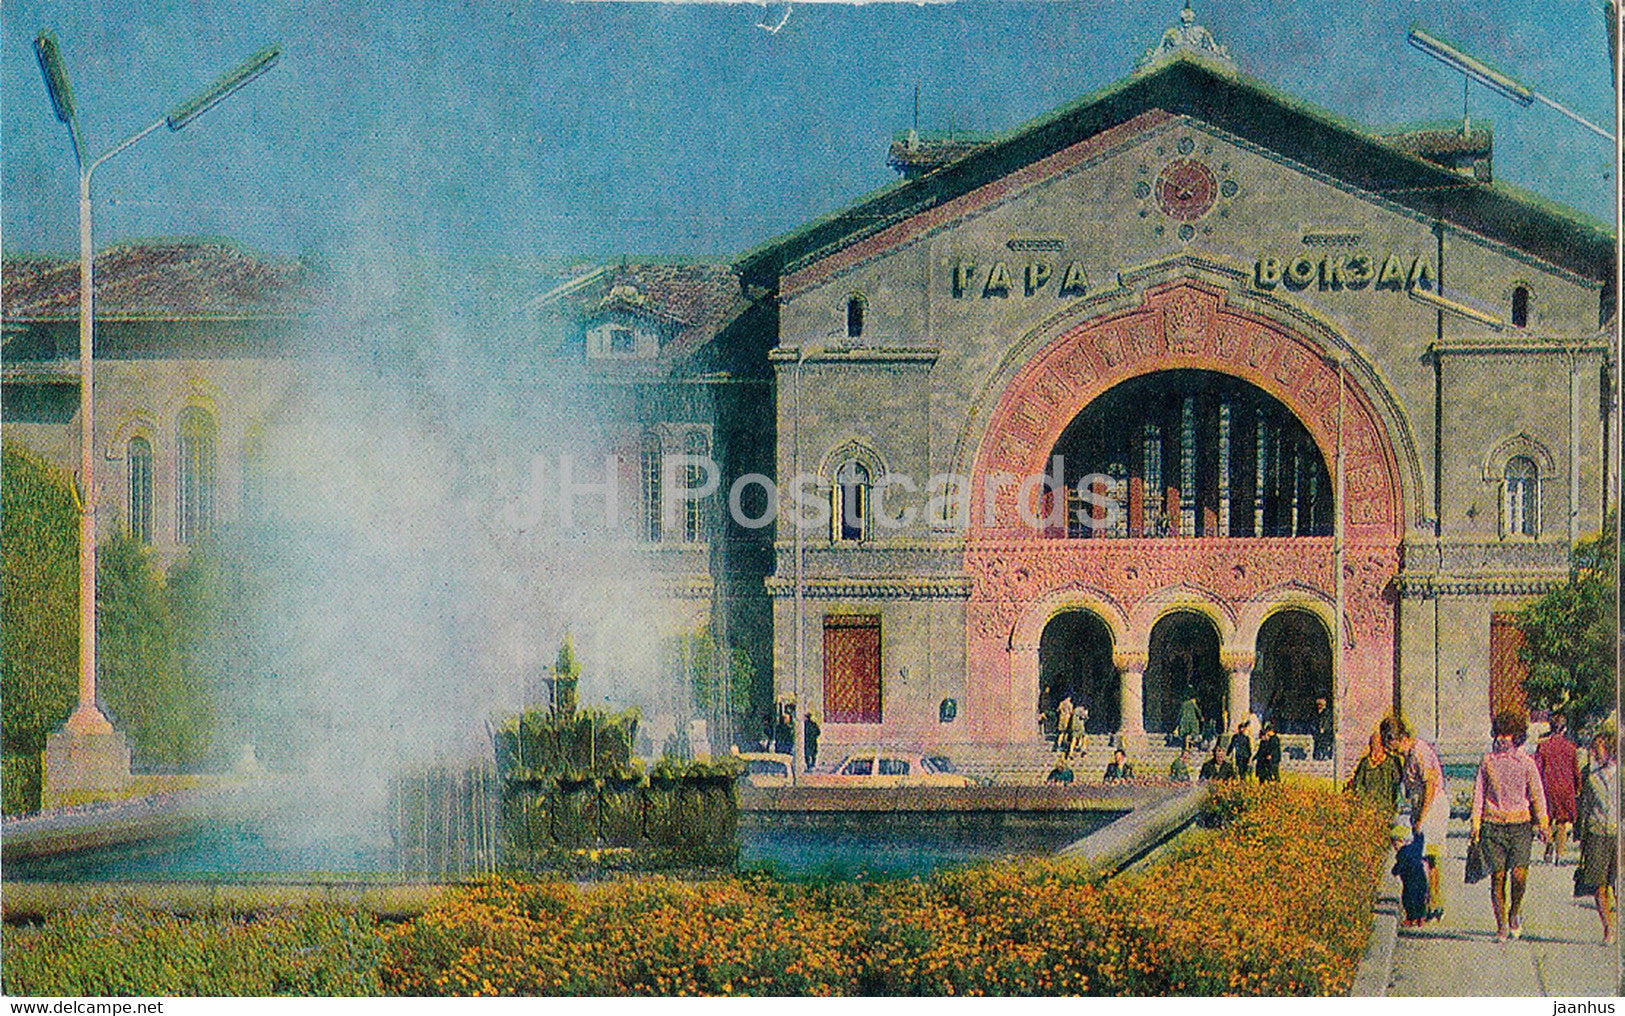 Chisinau - Railway Station - 1970 - Moldova USSR - unused - JH Postcards